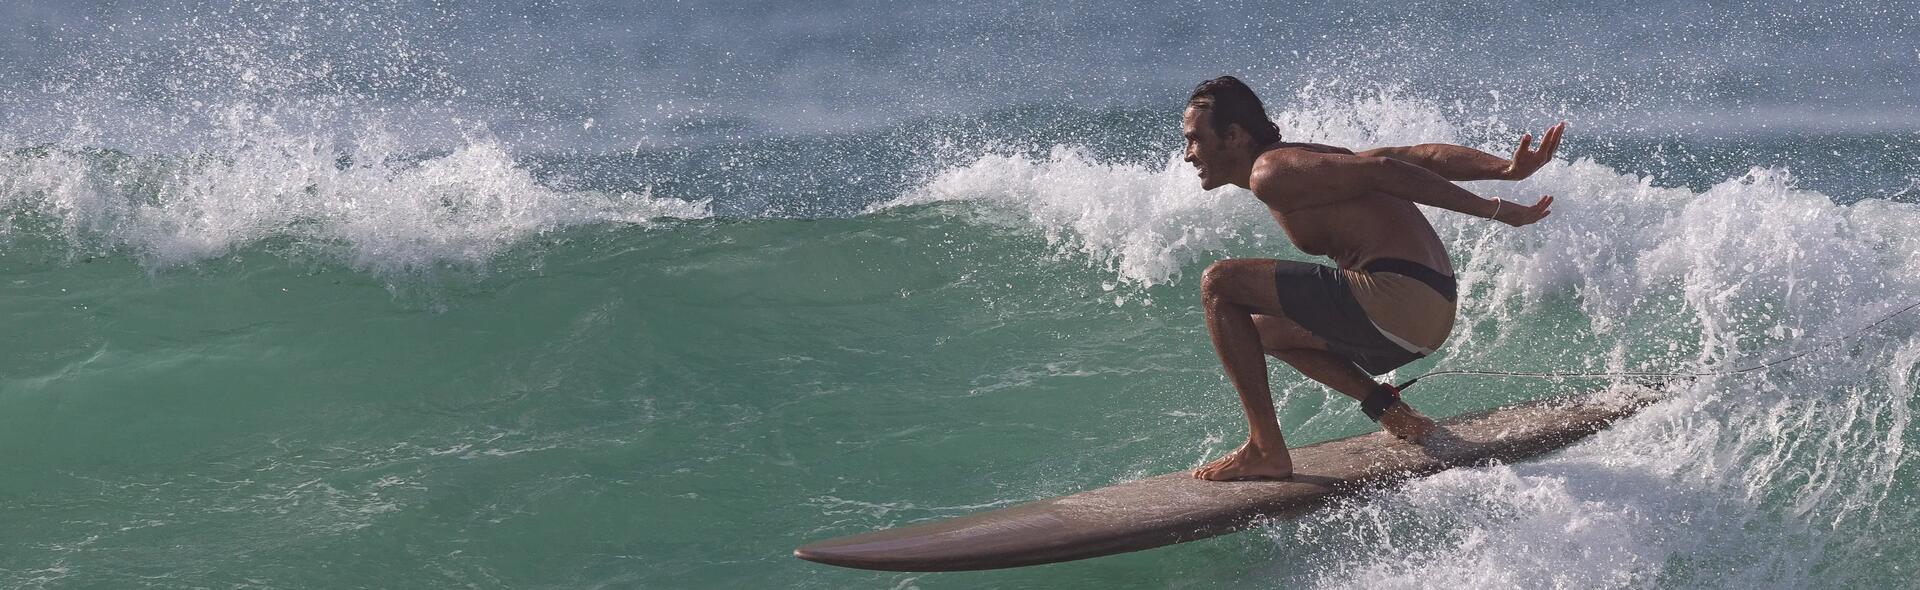 Quelle planche de surf choisir pour débutant ?